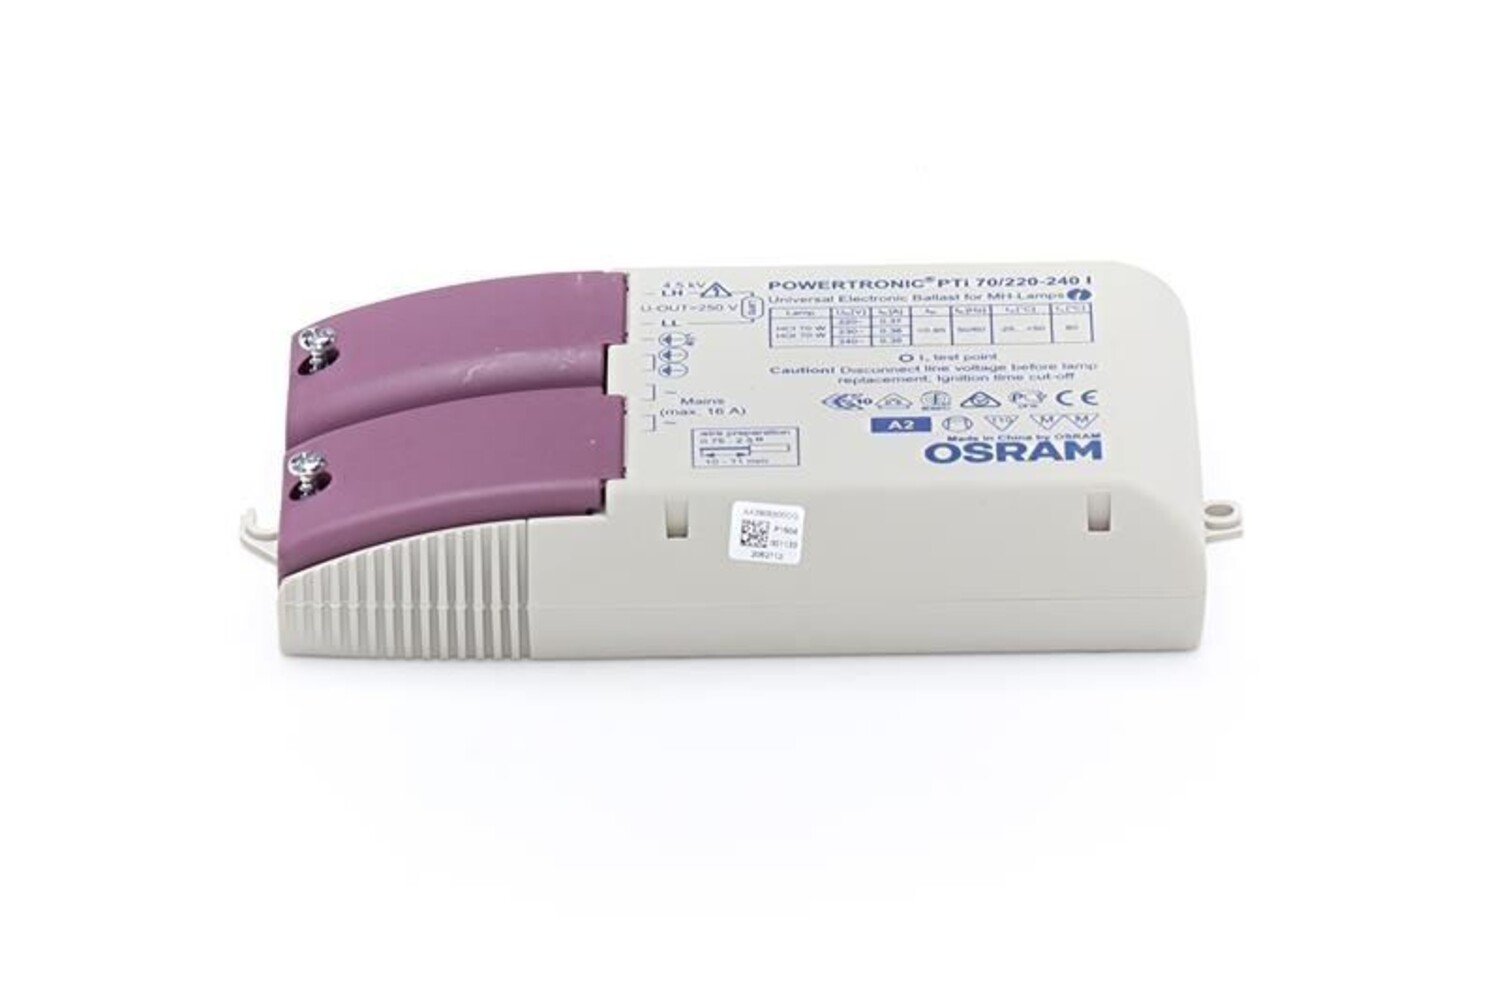 Hochwertiges LED Netzteil von der Marke OSRAM